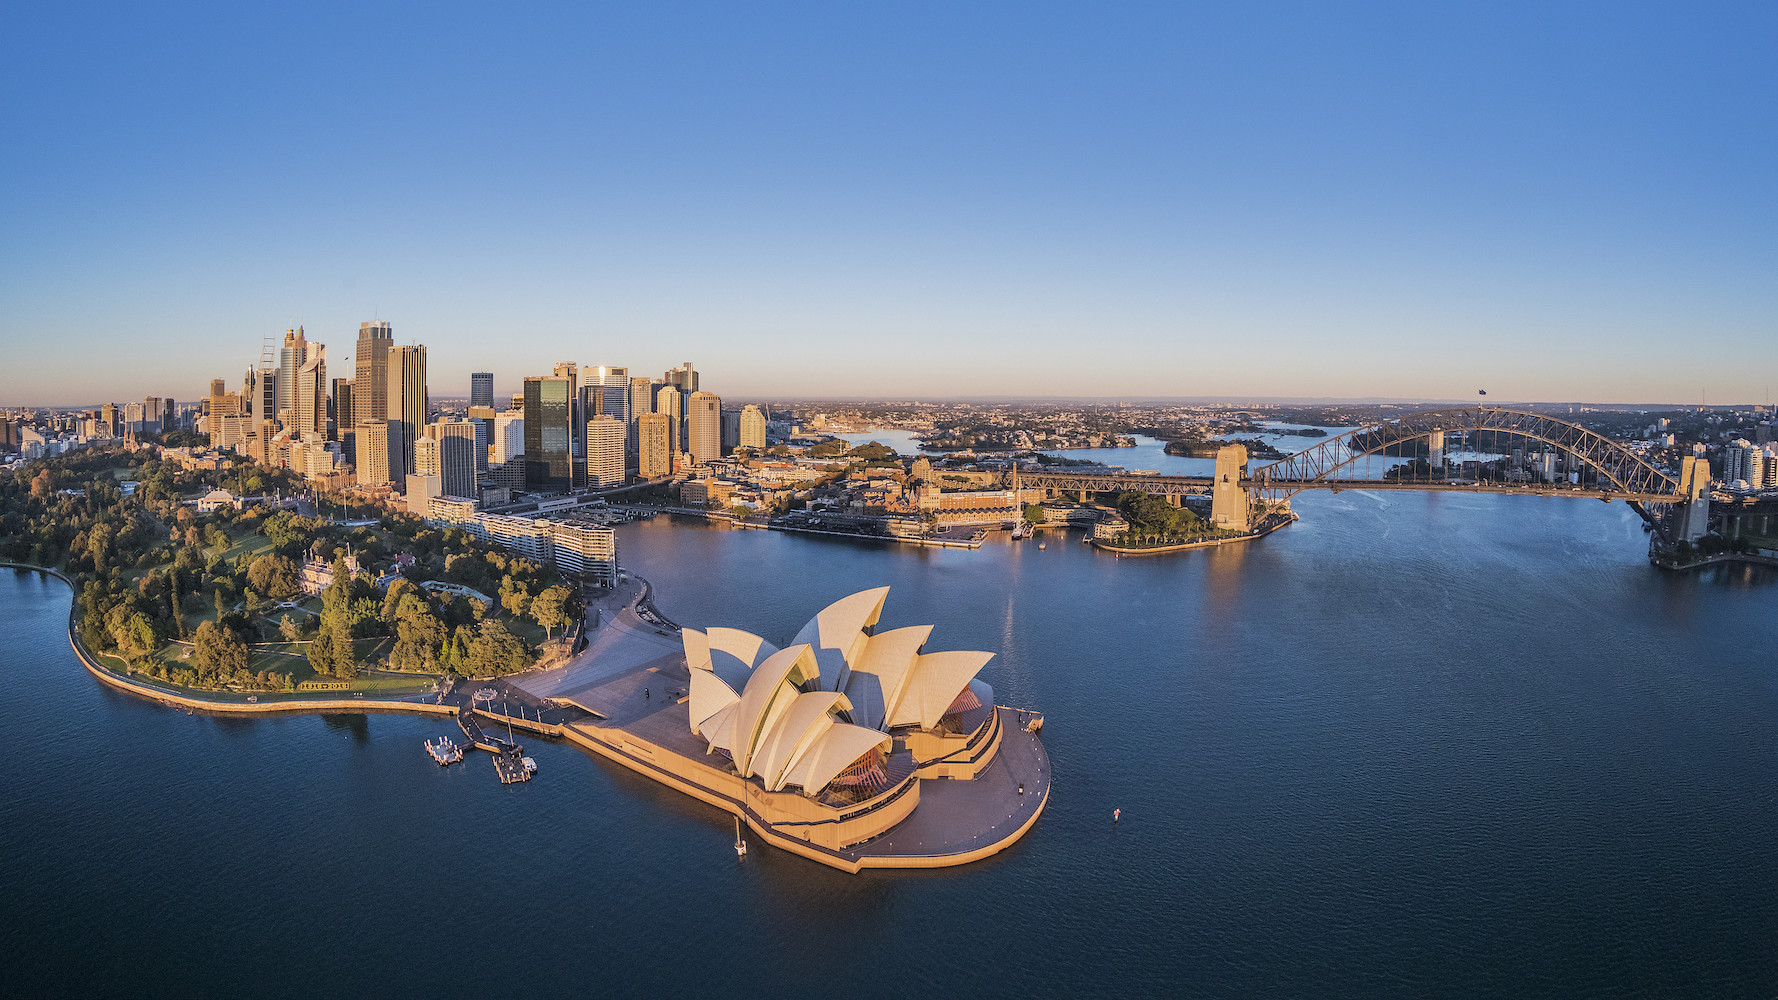 The Sydney Opera House Celebrates 50 Years